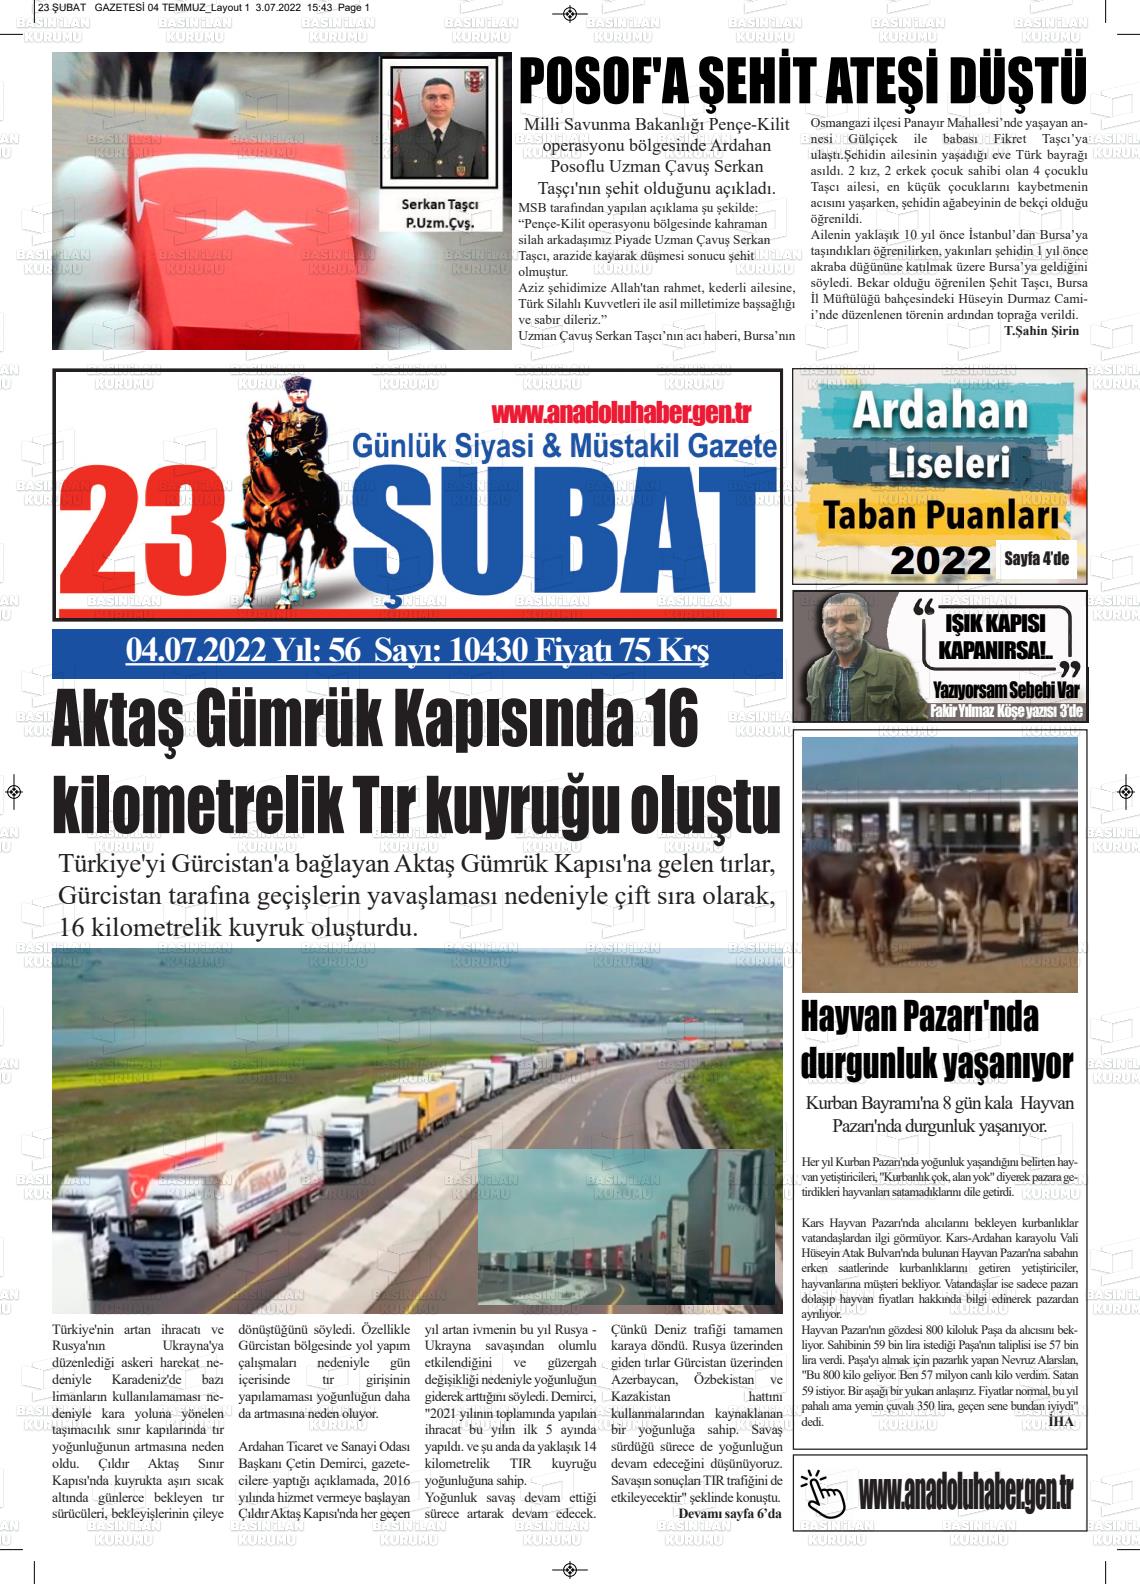 04 Temmuz 2022 23 Şubat Gazete Manşeti